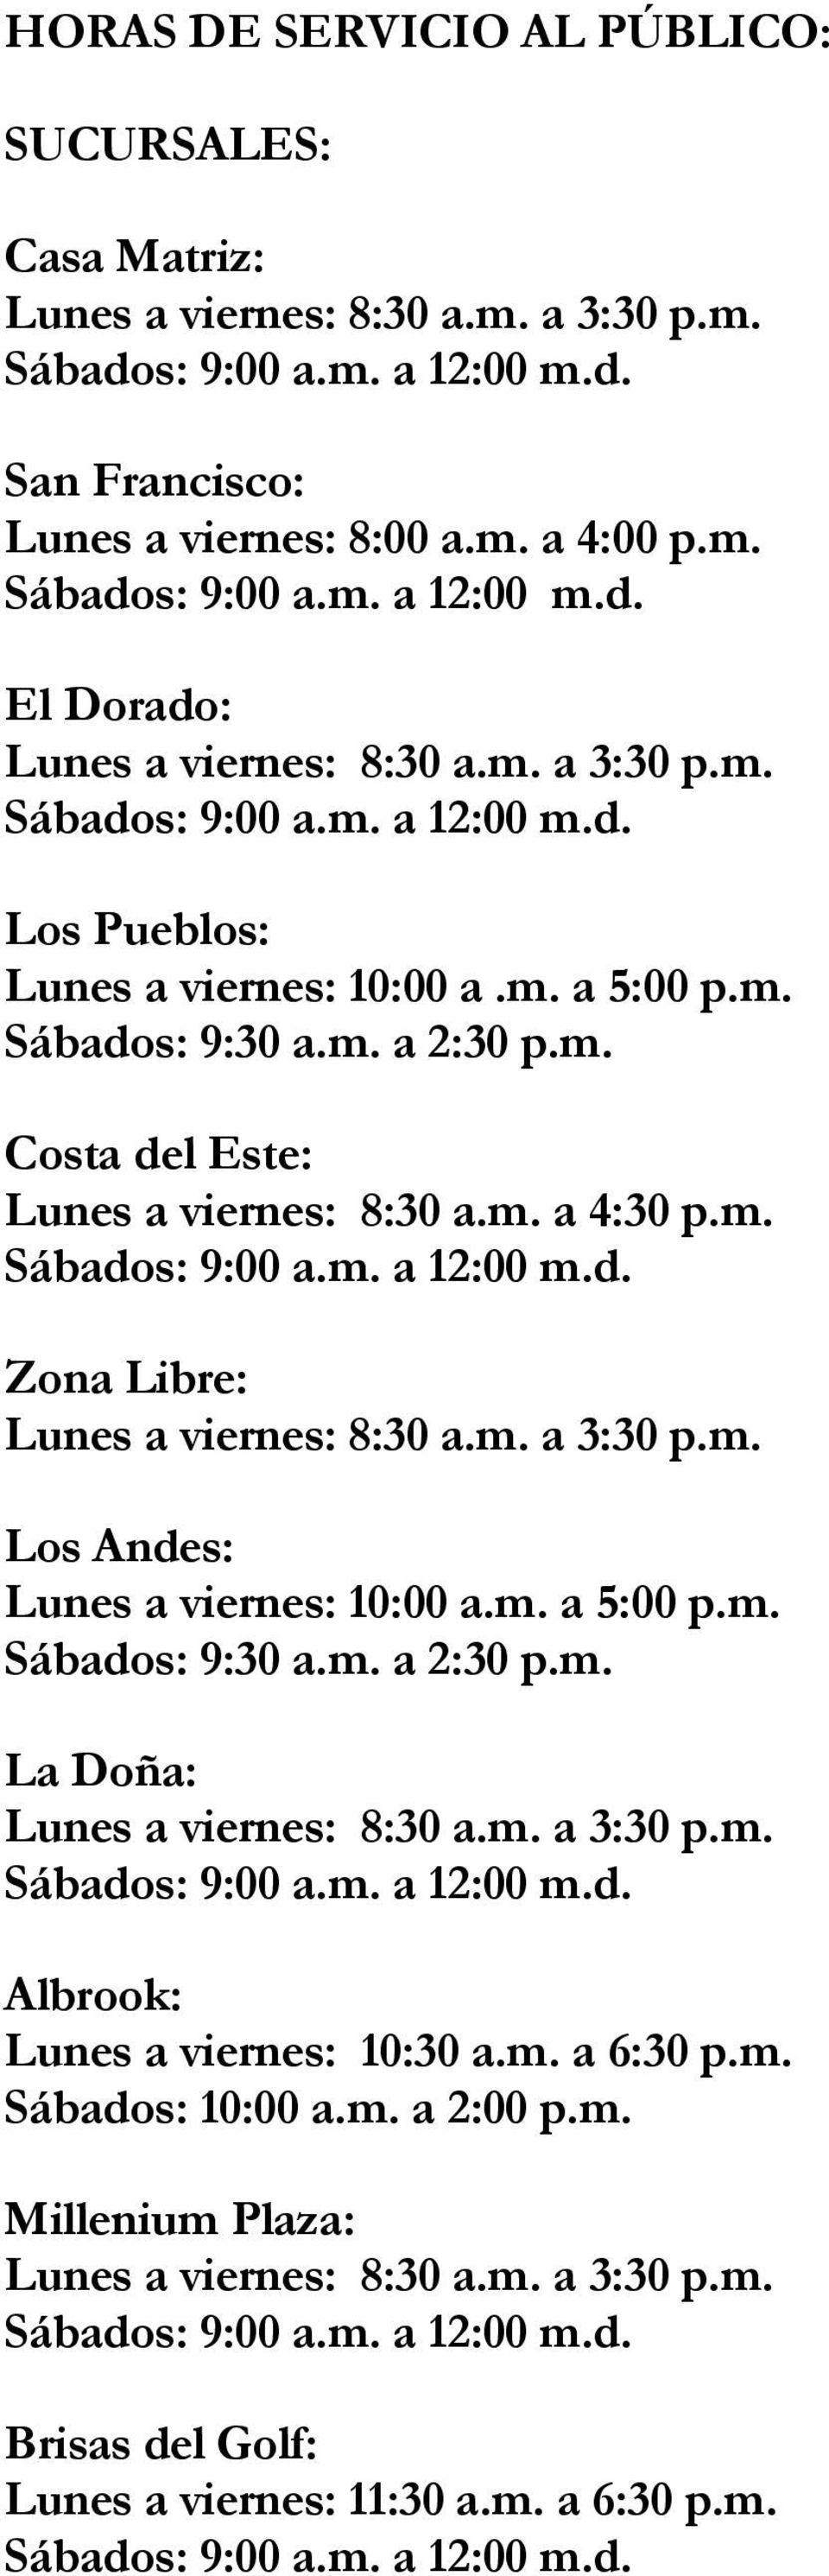 m. a 4:30 p.m. Zona Libre: Los Andes: Lunes a viernes: 10:00 a.m. a 5:00 p.m. Sábados: 9:30 a.m. a 2:30 p.m. La Doña: Albrook: Lunes a viernes: 10:30 a.